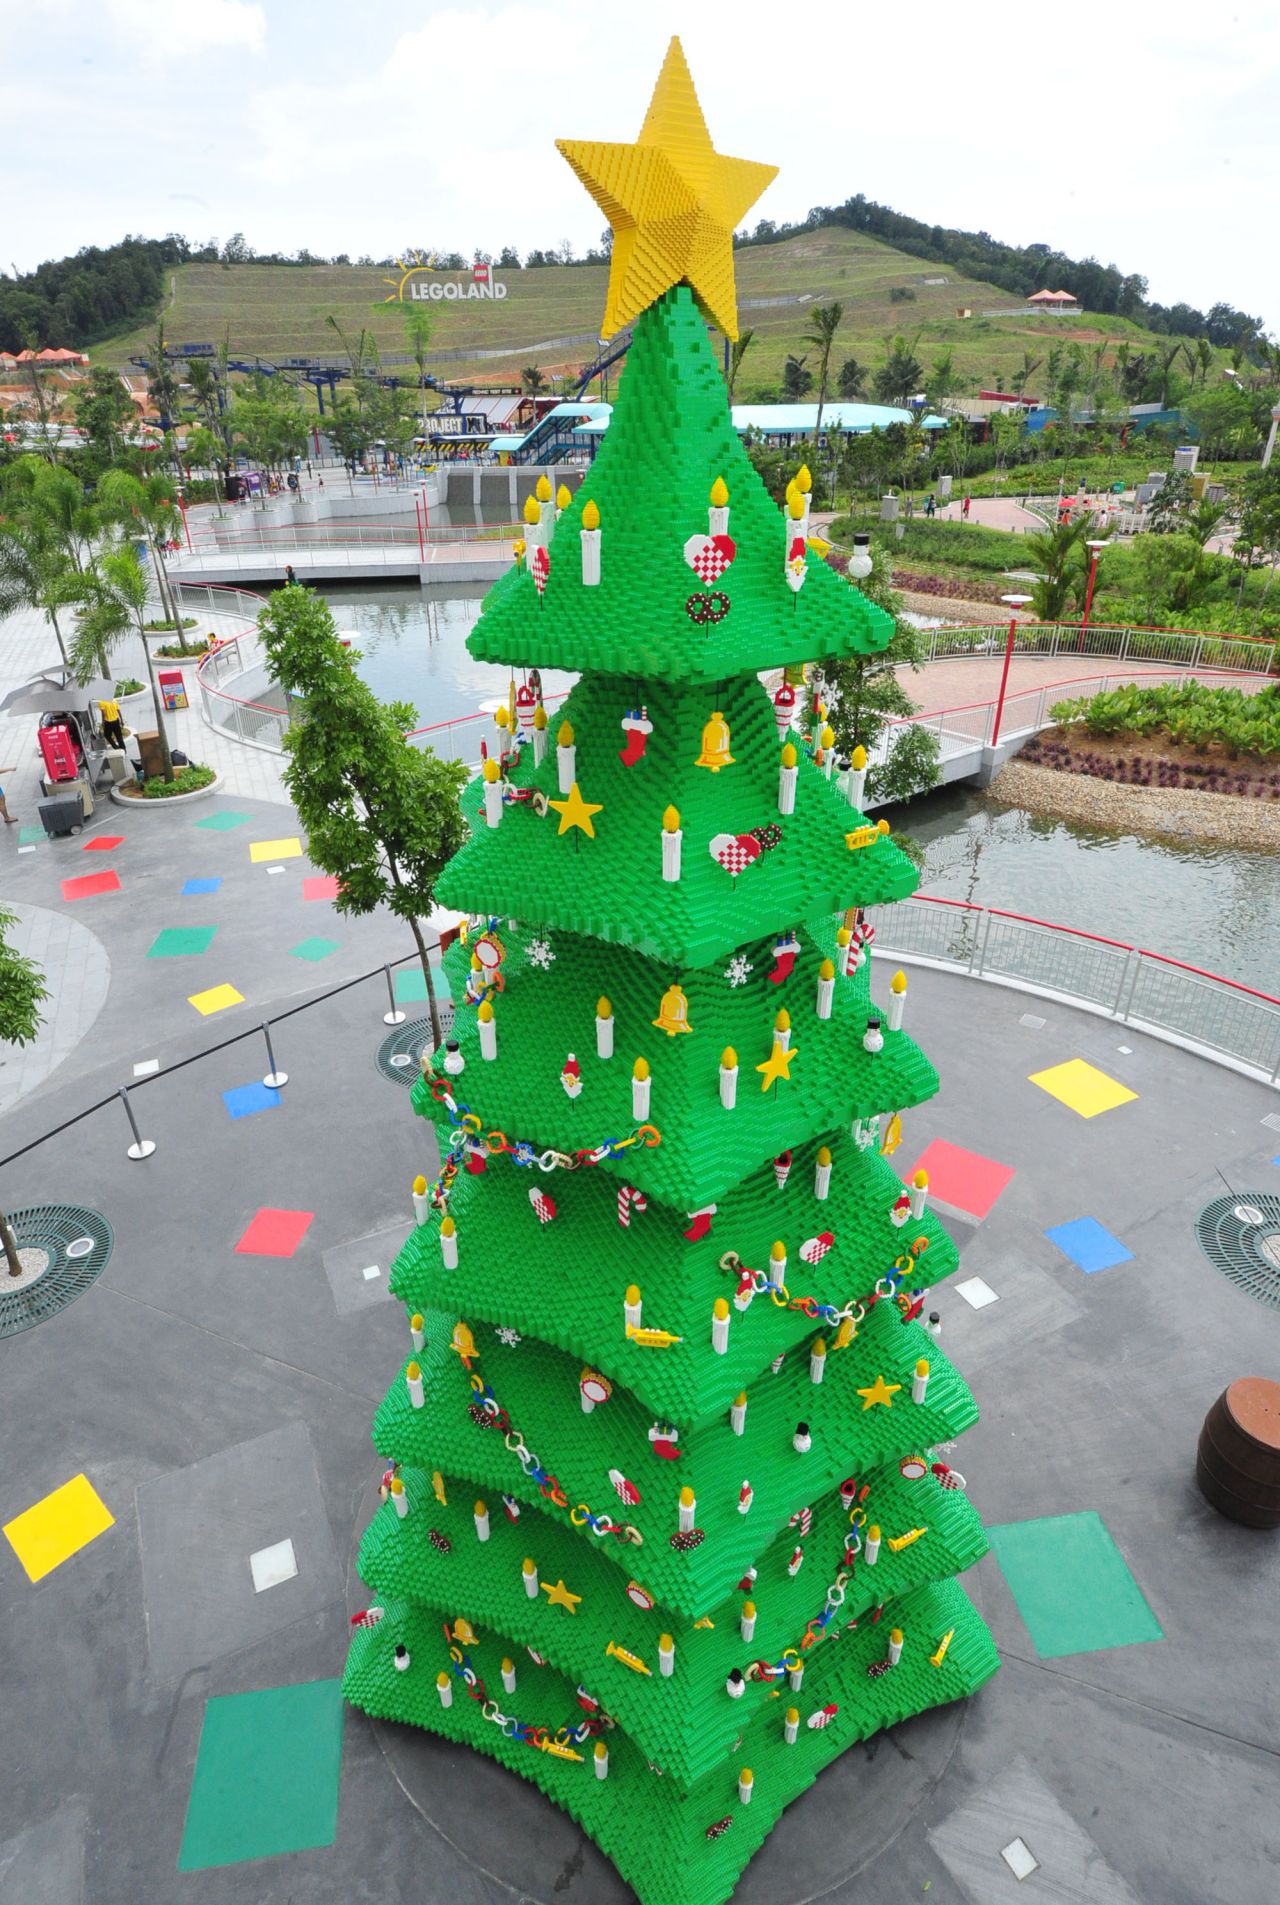 Construido con 400.000 bloques de Lego, ¿qué niños habrán hecho esto en Legoland de Malasia?